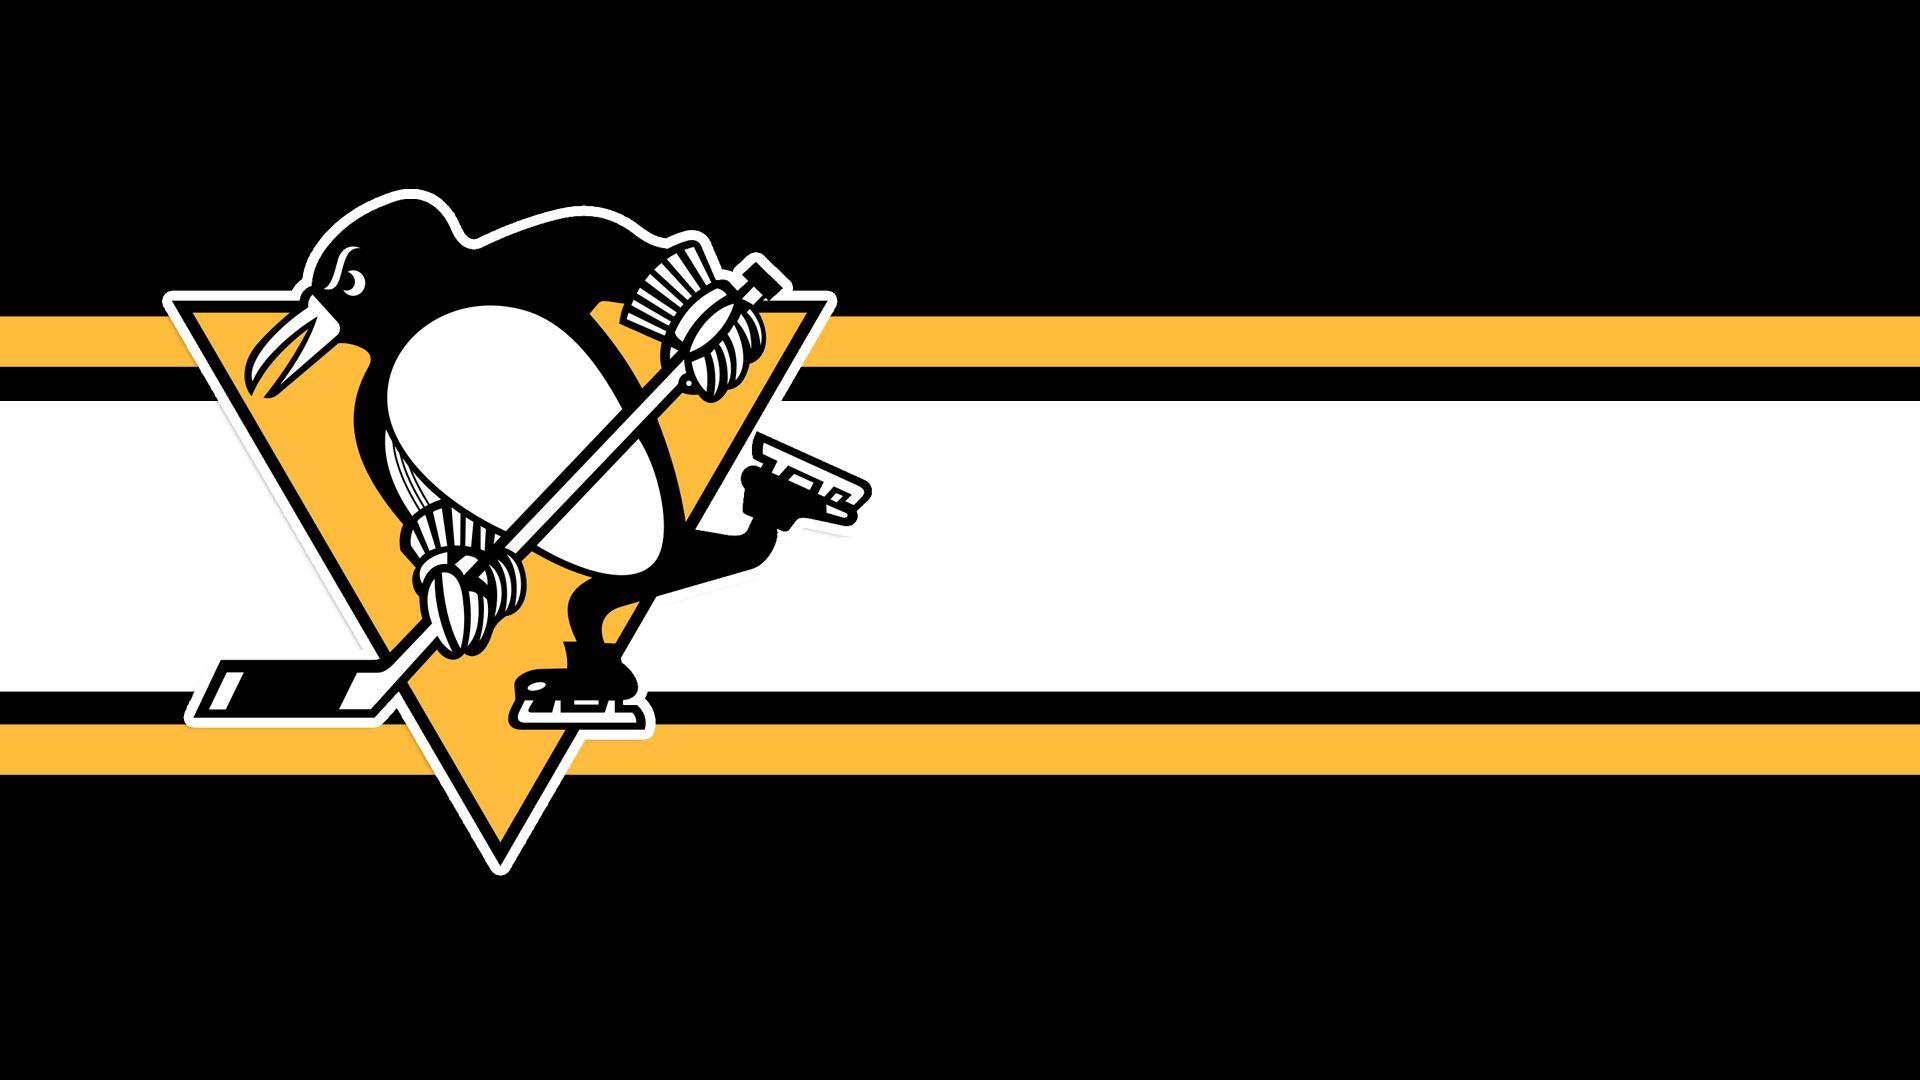 Wallpaper.wiki Image Pittsburgh Penguins Logo Wallpaper PIC